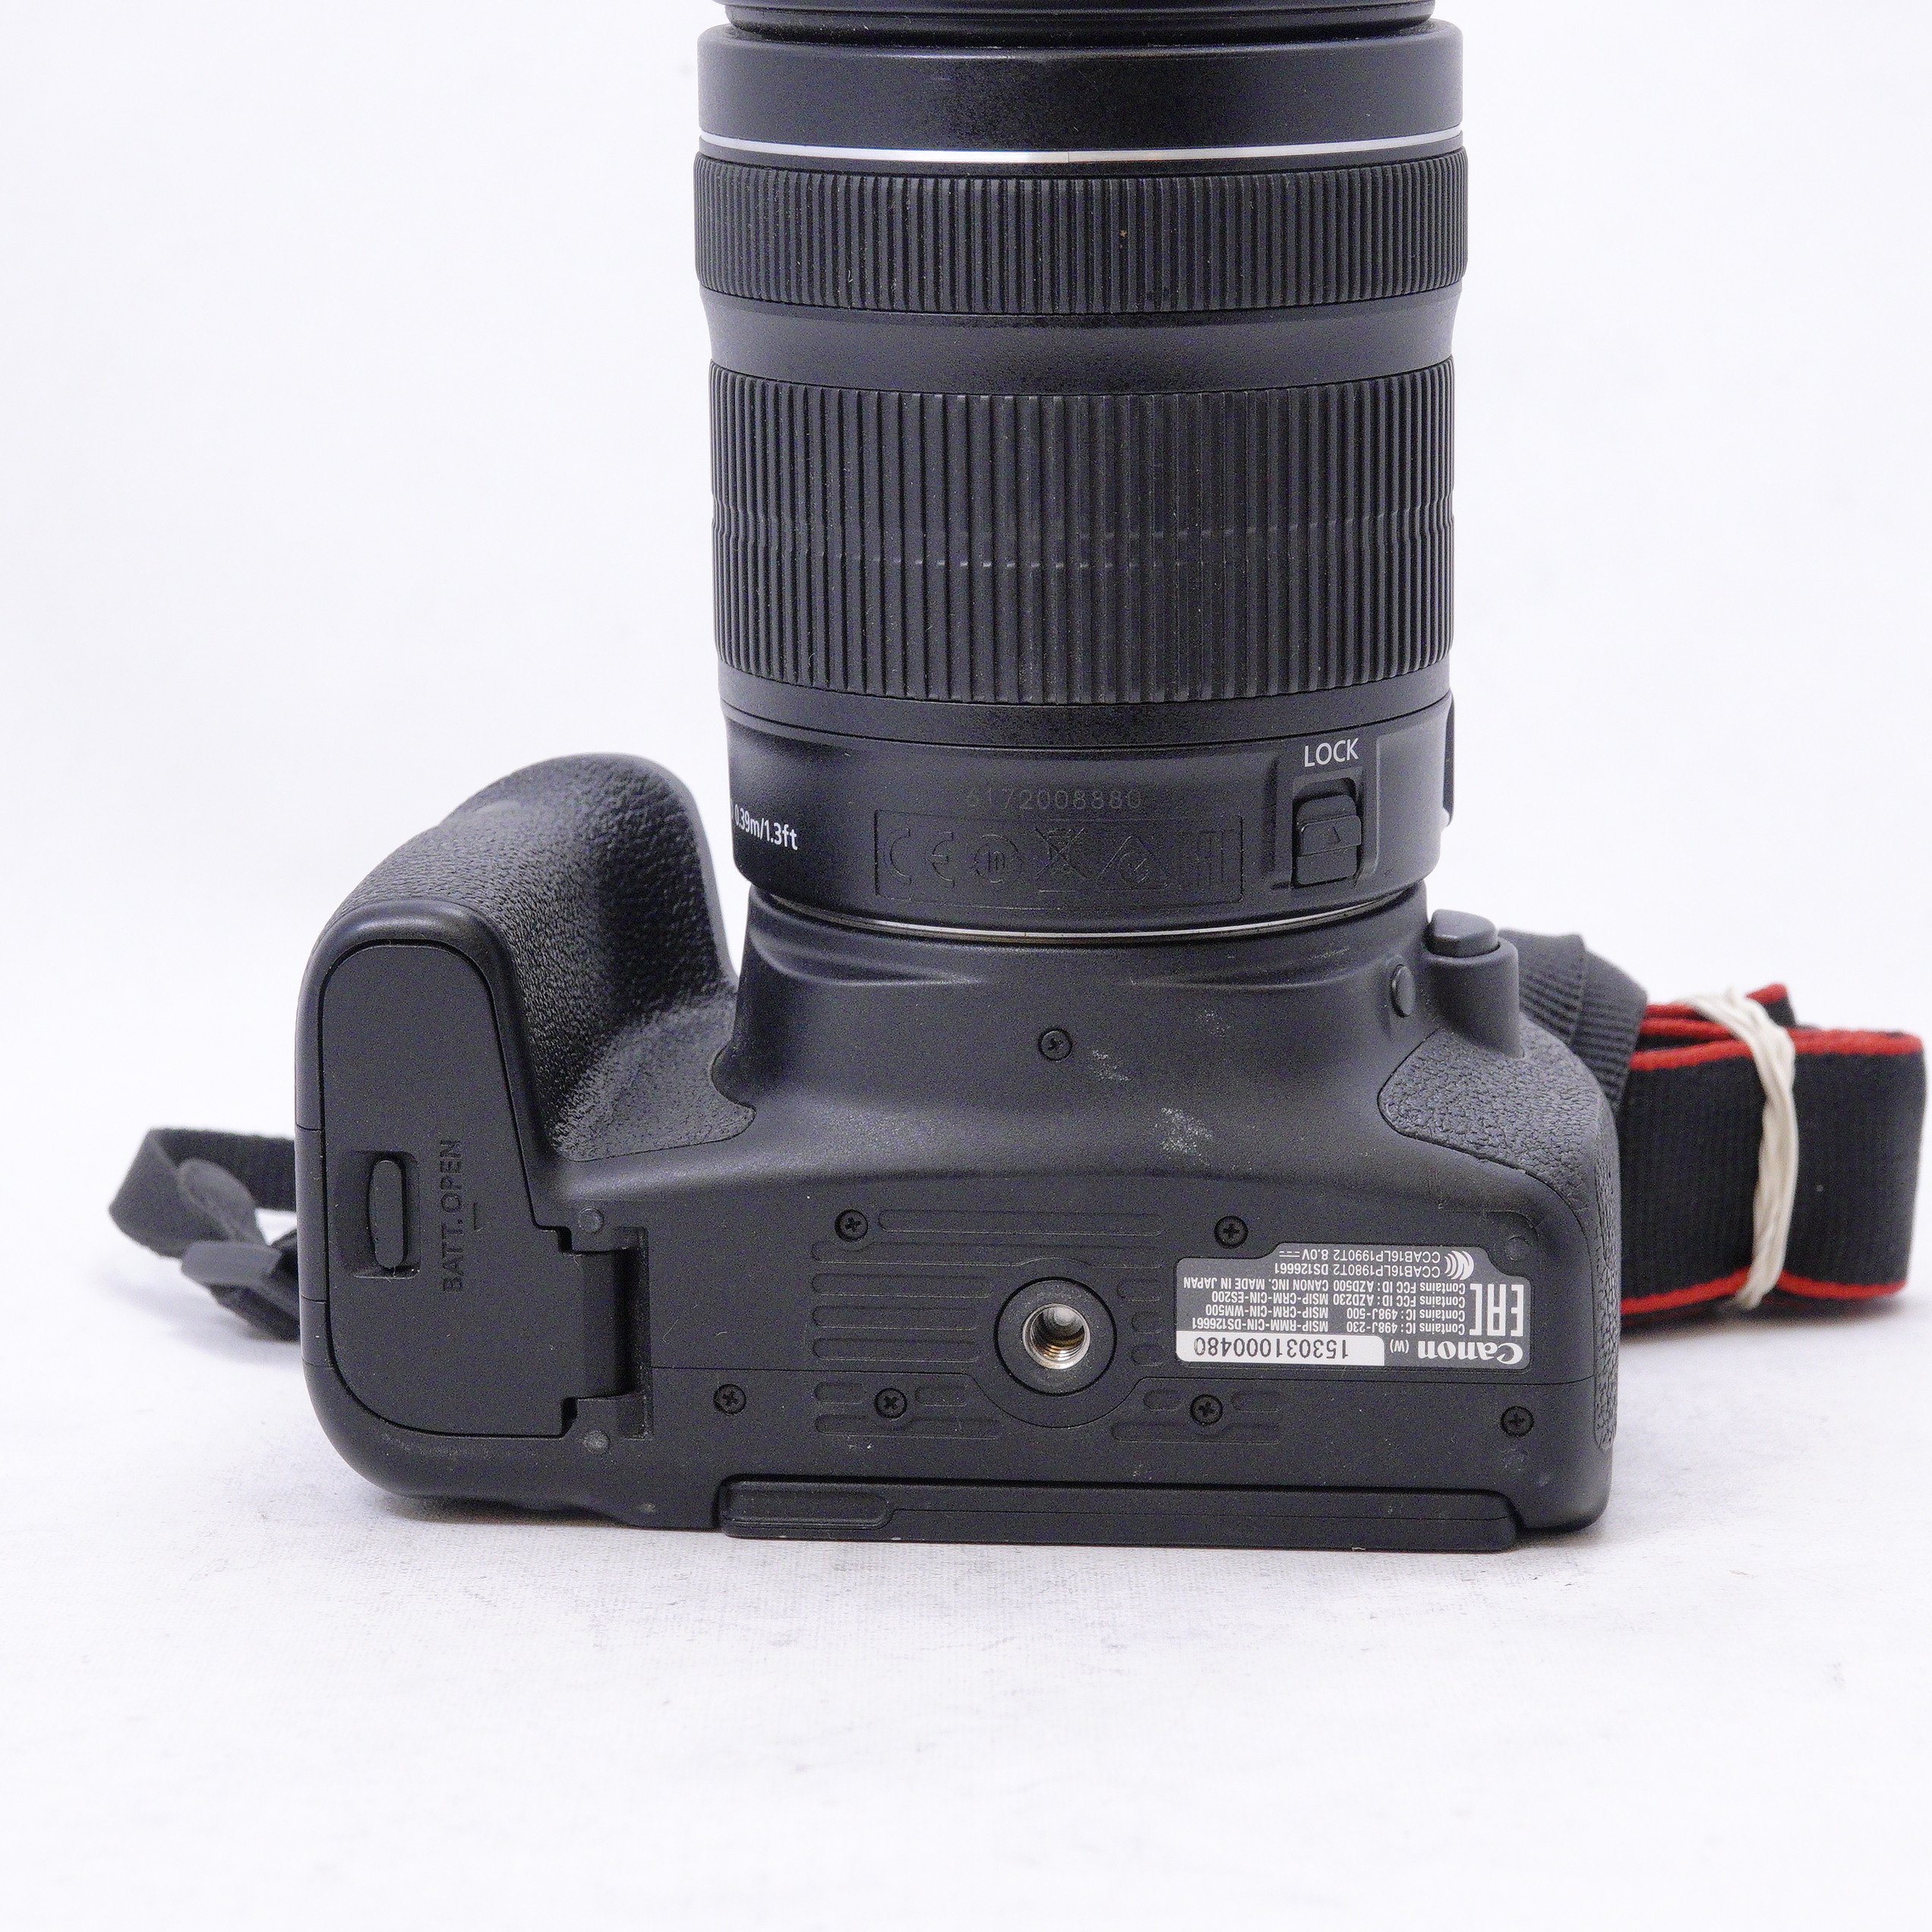 Canon EOS 800D con lente EF-S 18-135mm kit - Usado